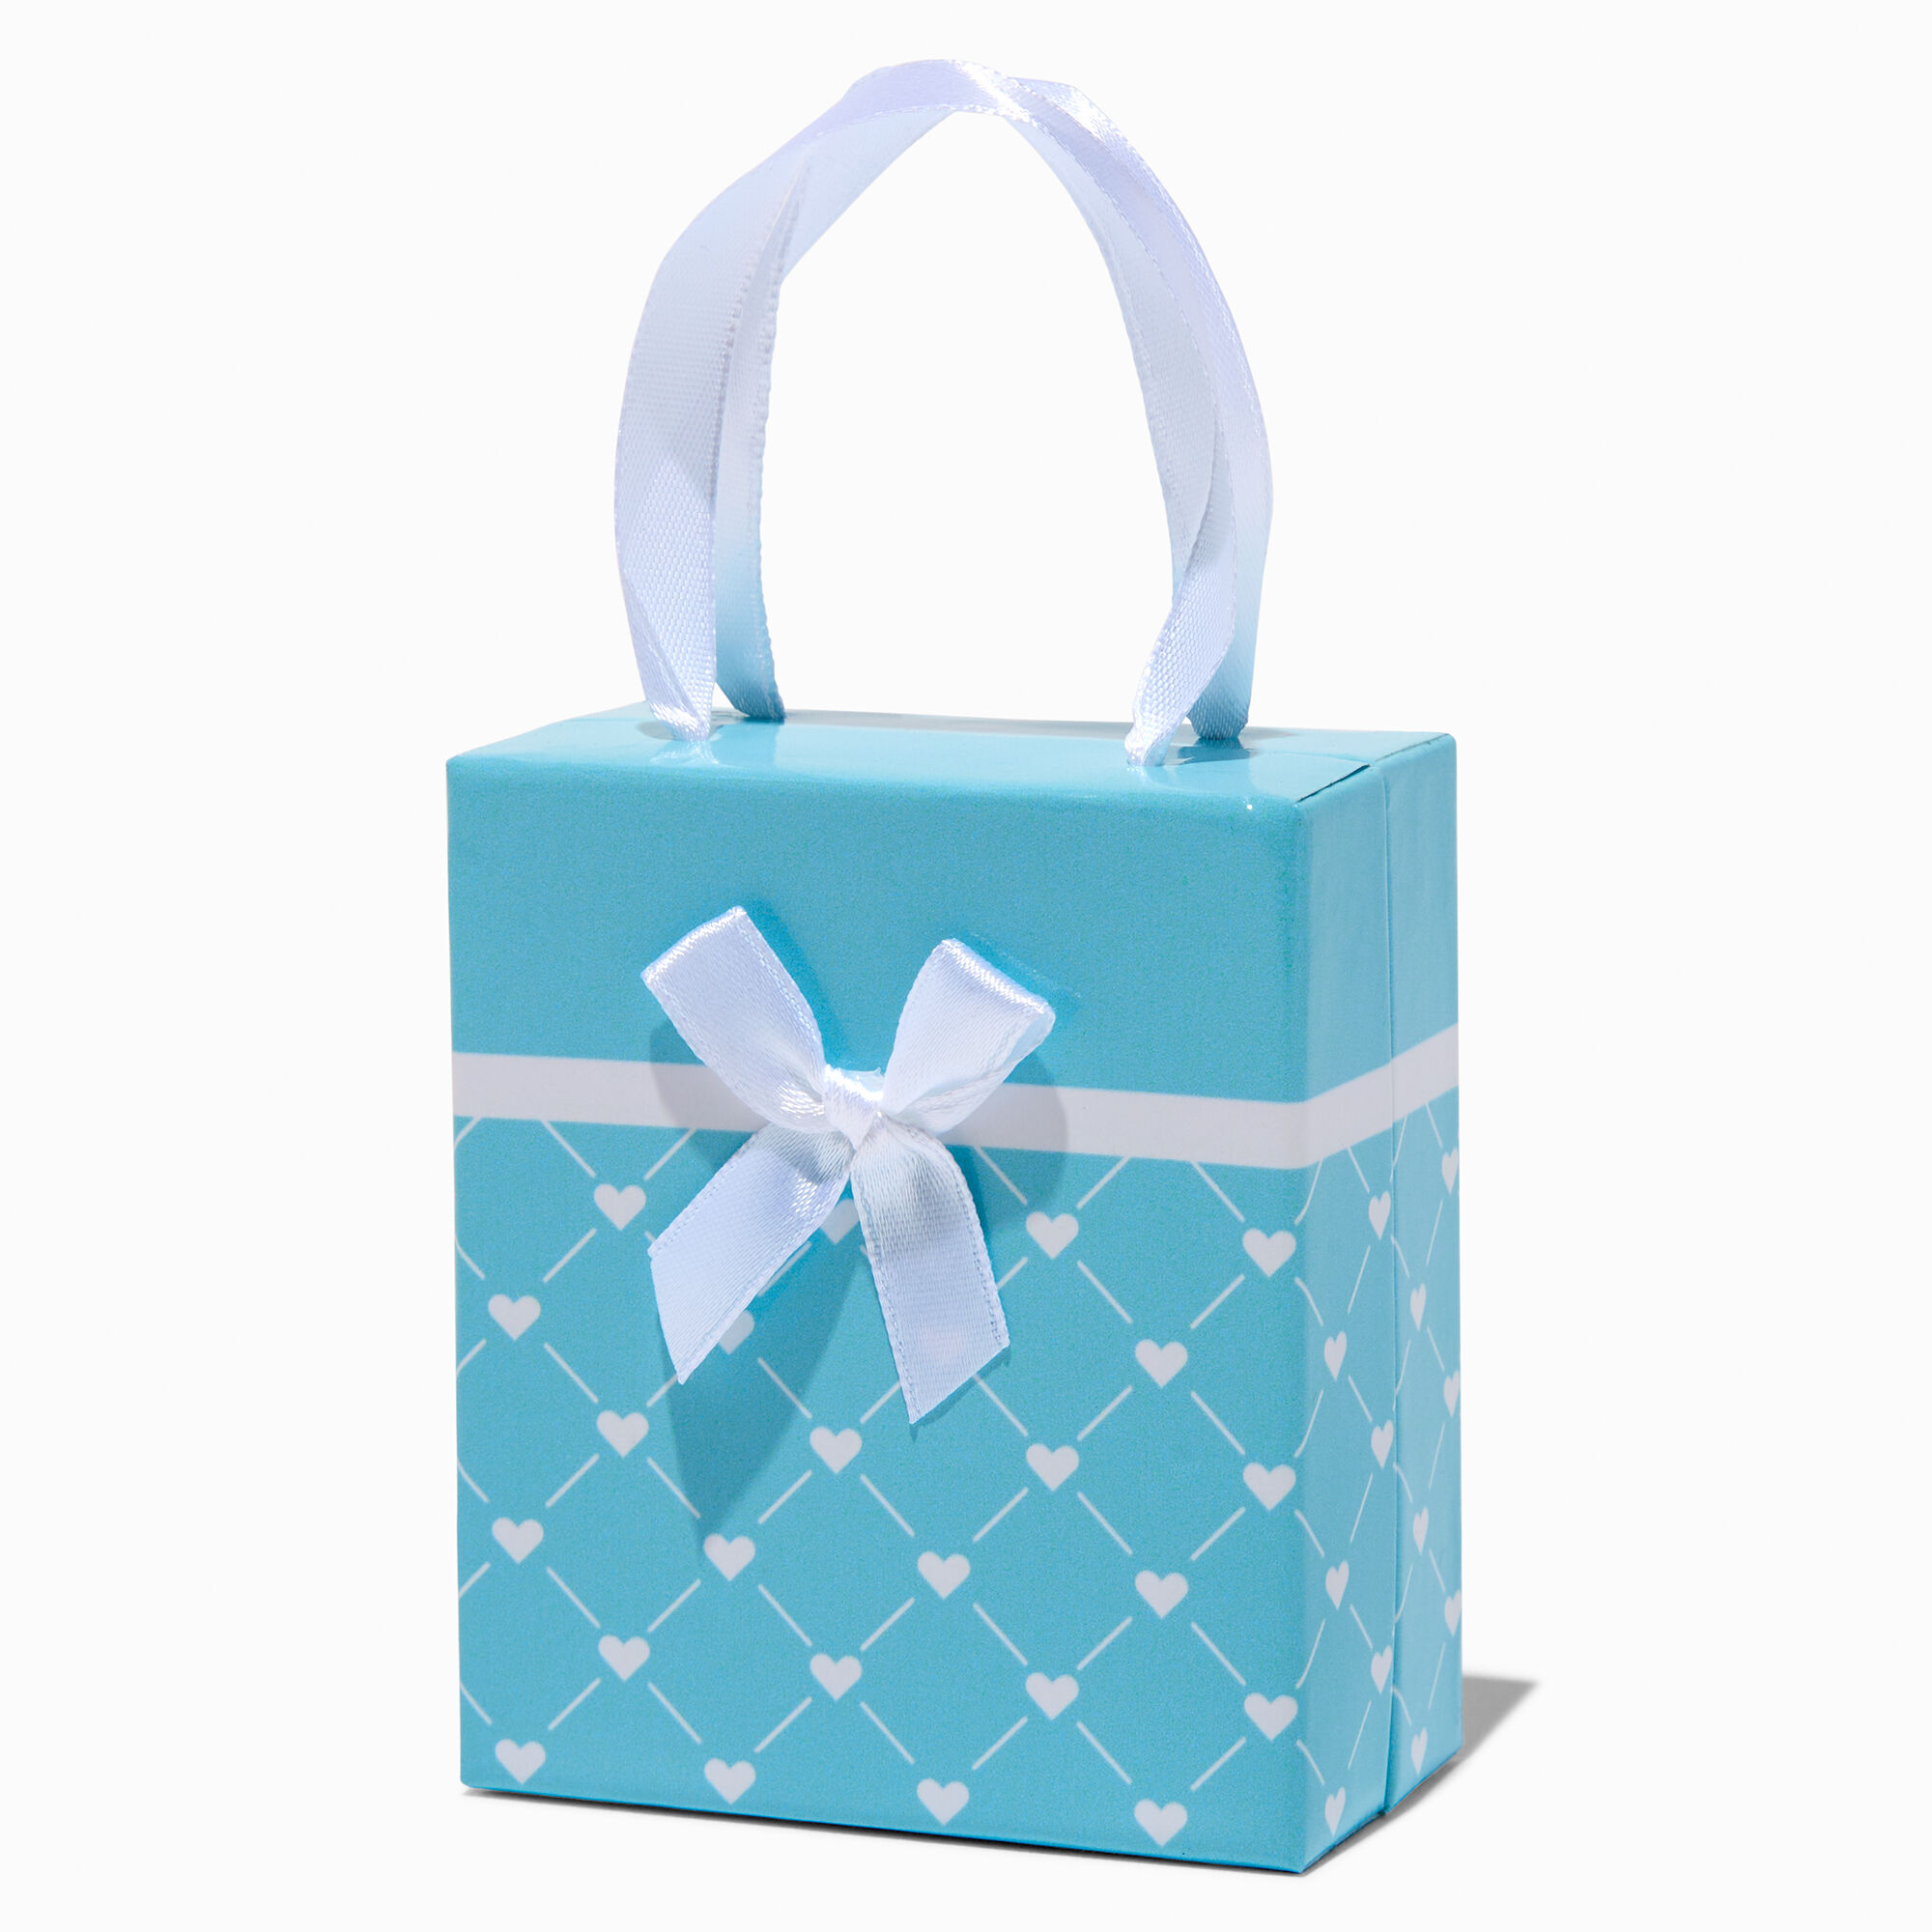 claire's blue heart lattice small gift box